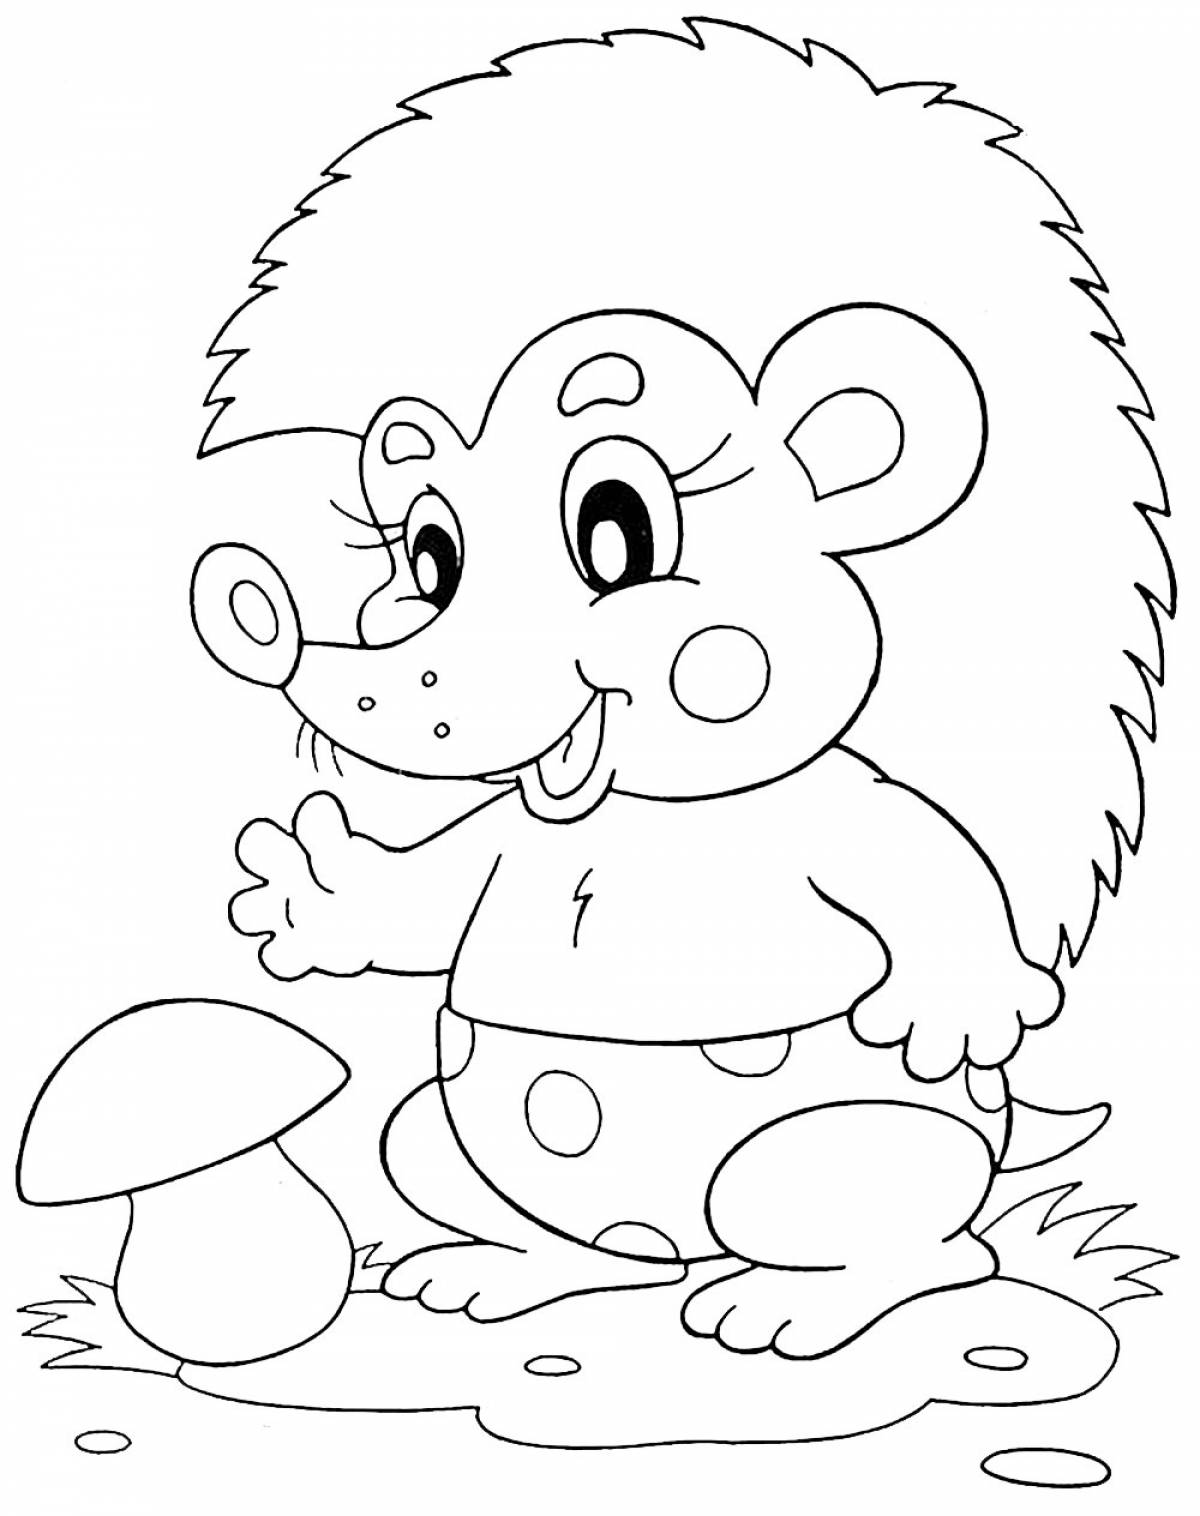 Radiant hedgehog coloring book for kids